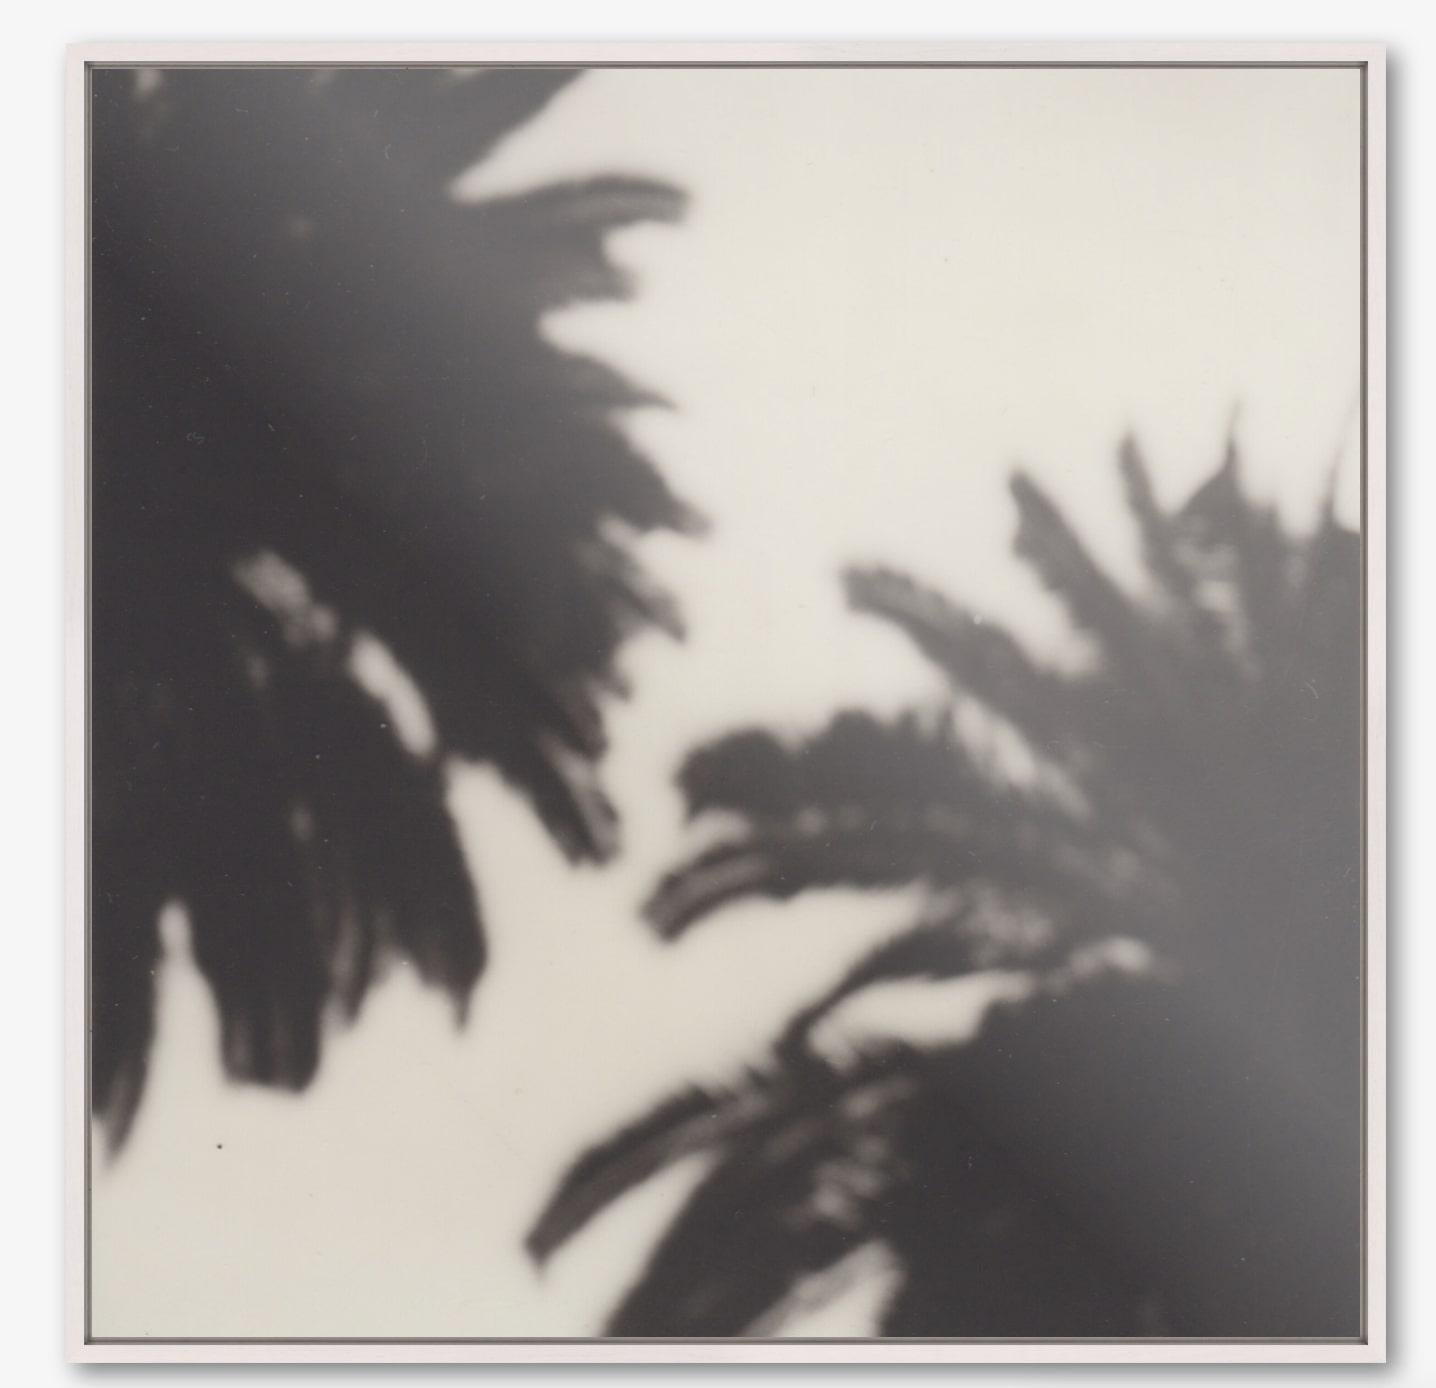 Calme comme un palmier - Tirage photographique contemporain en noir et blanc du 21e siècle, original polaroïd, cadre à ombres portées - Tirage photographique sur aluminium dibond - Édition de 10 + 1, avec certificat

Calm as a Palm est un bel